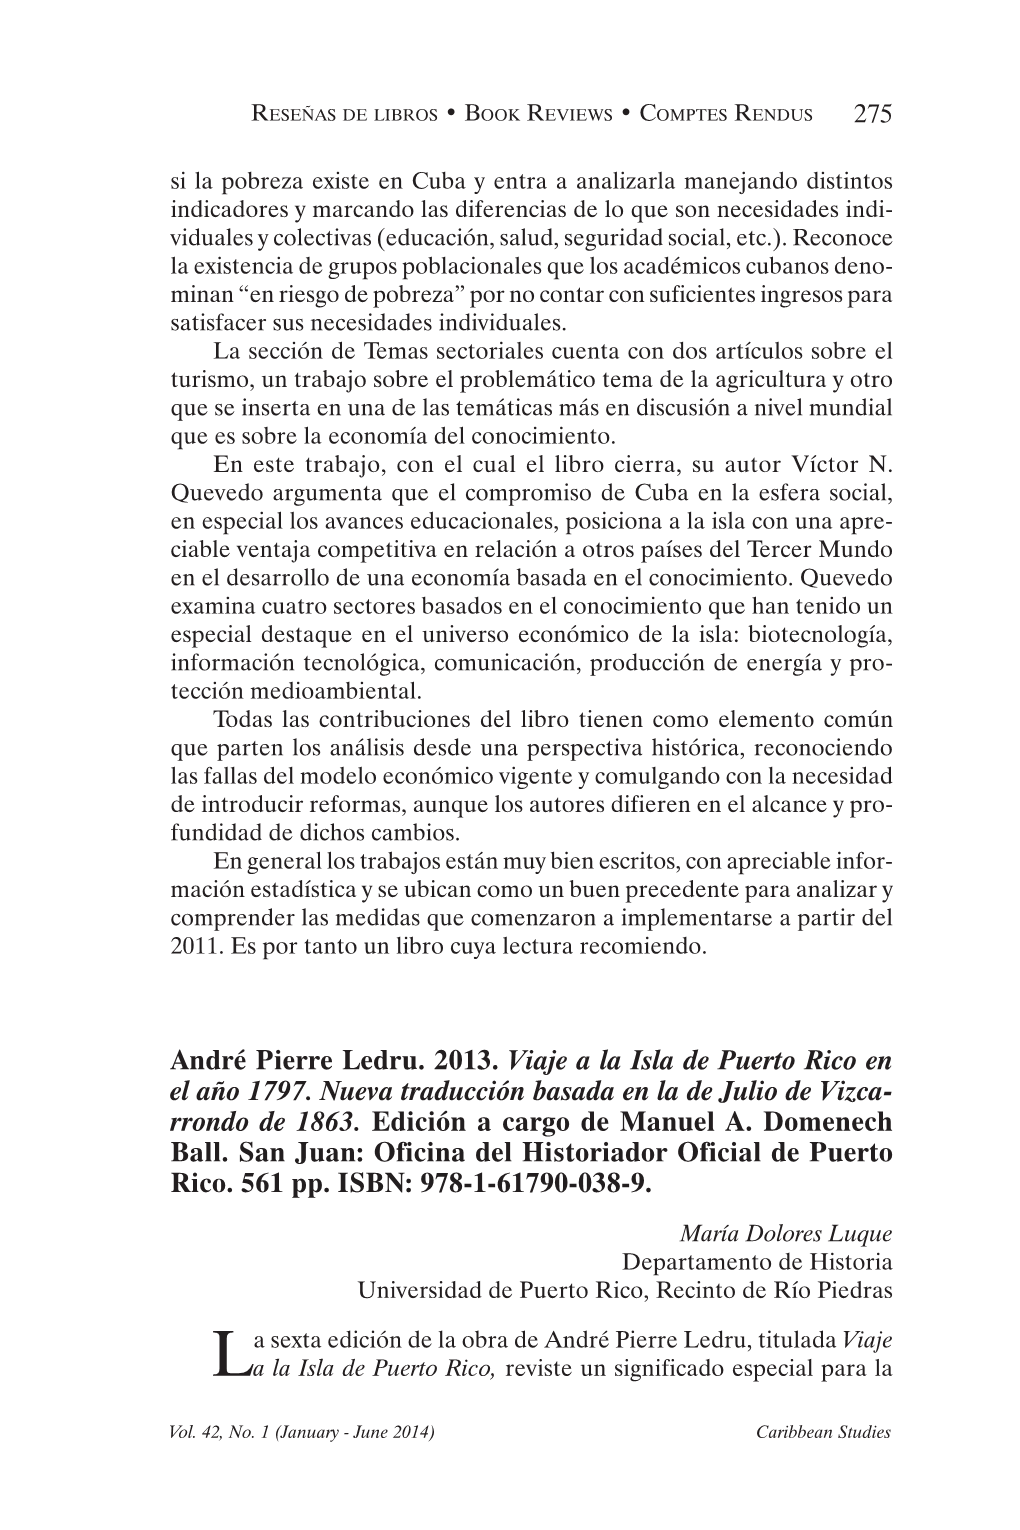 André Pierre Ledru. 2013. Viaje a La Isla De Puerto Rico En El Año 1797